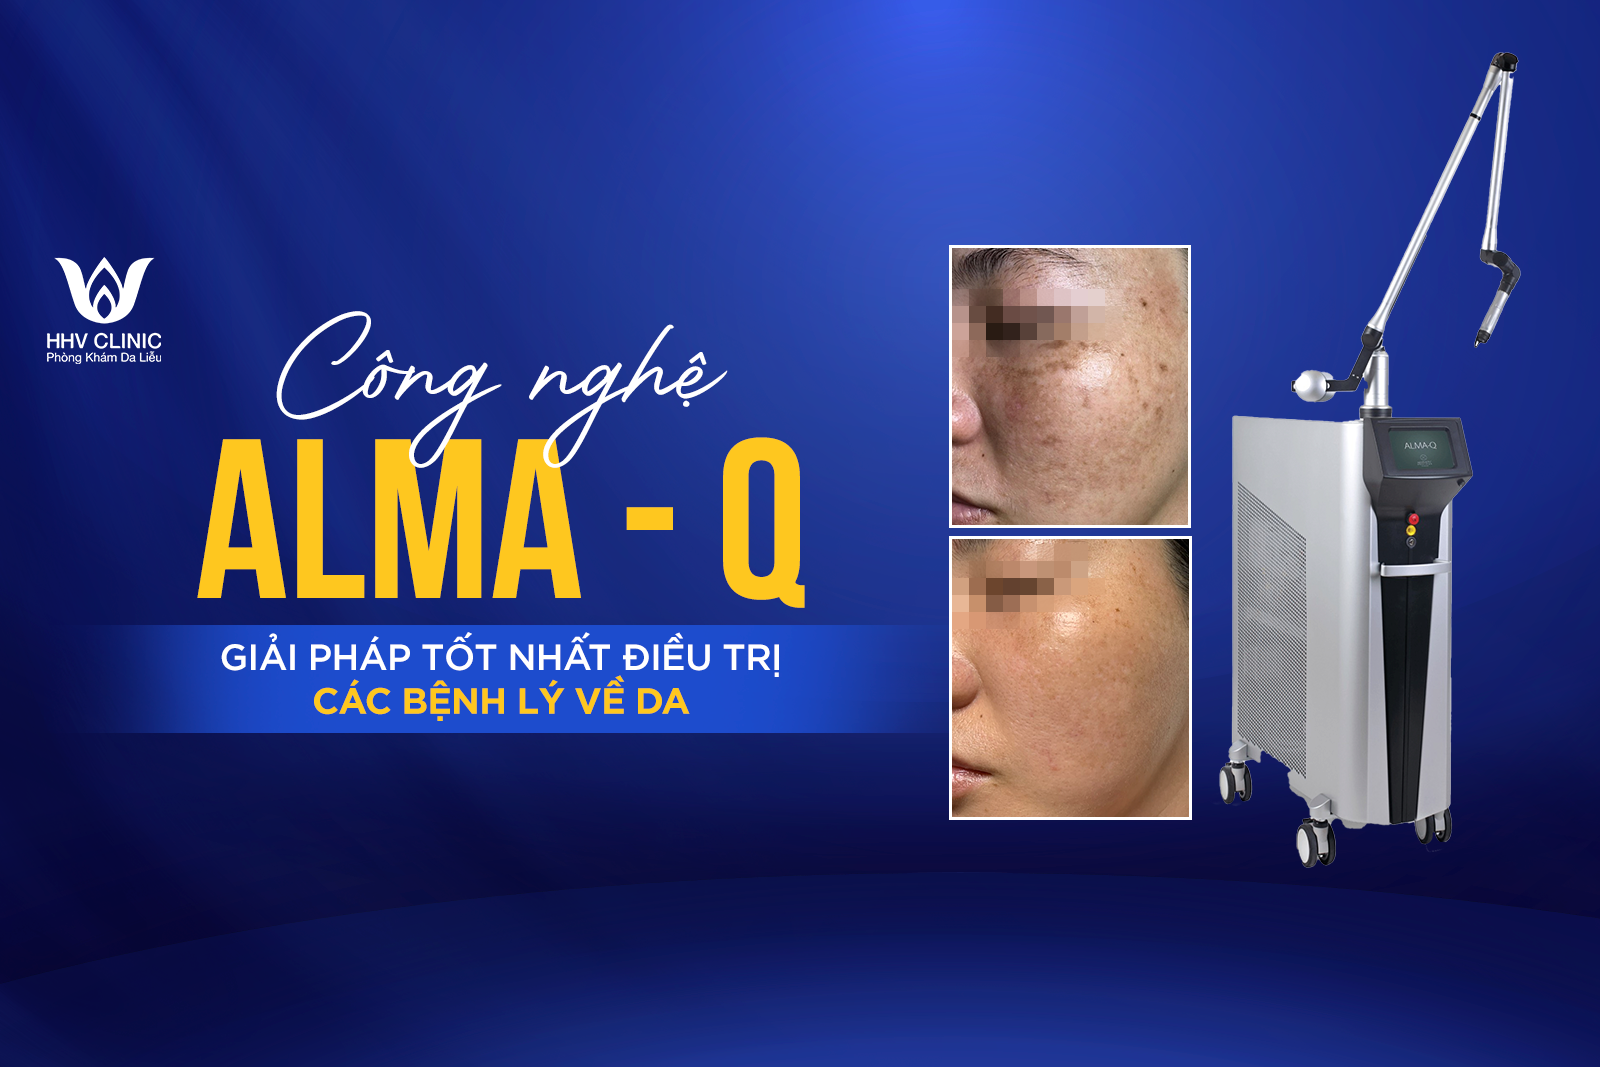 Công nghệ ALMA - Q: Giải pháp tốt nhất điều trị các bệnh lý về da